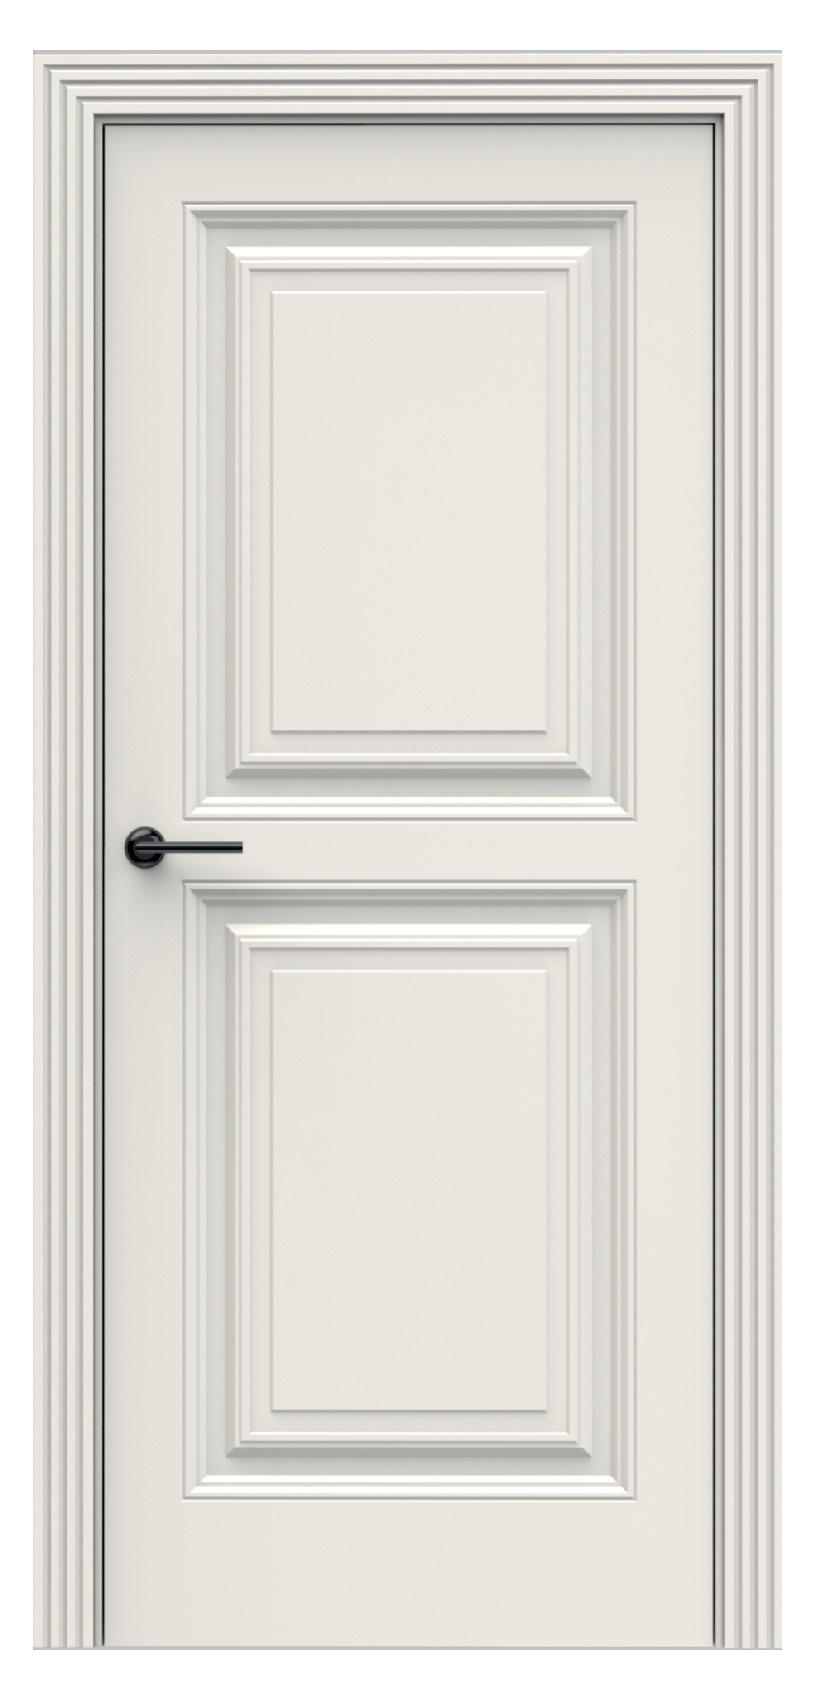 Questdoors Межкомнатная дверь QBR16, арт. 17929 - фото №1